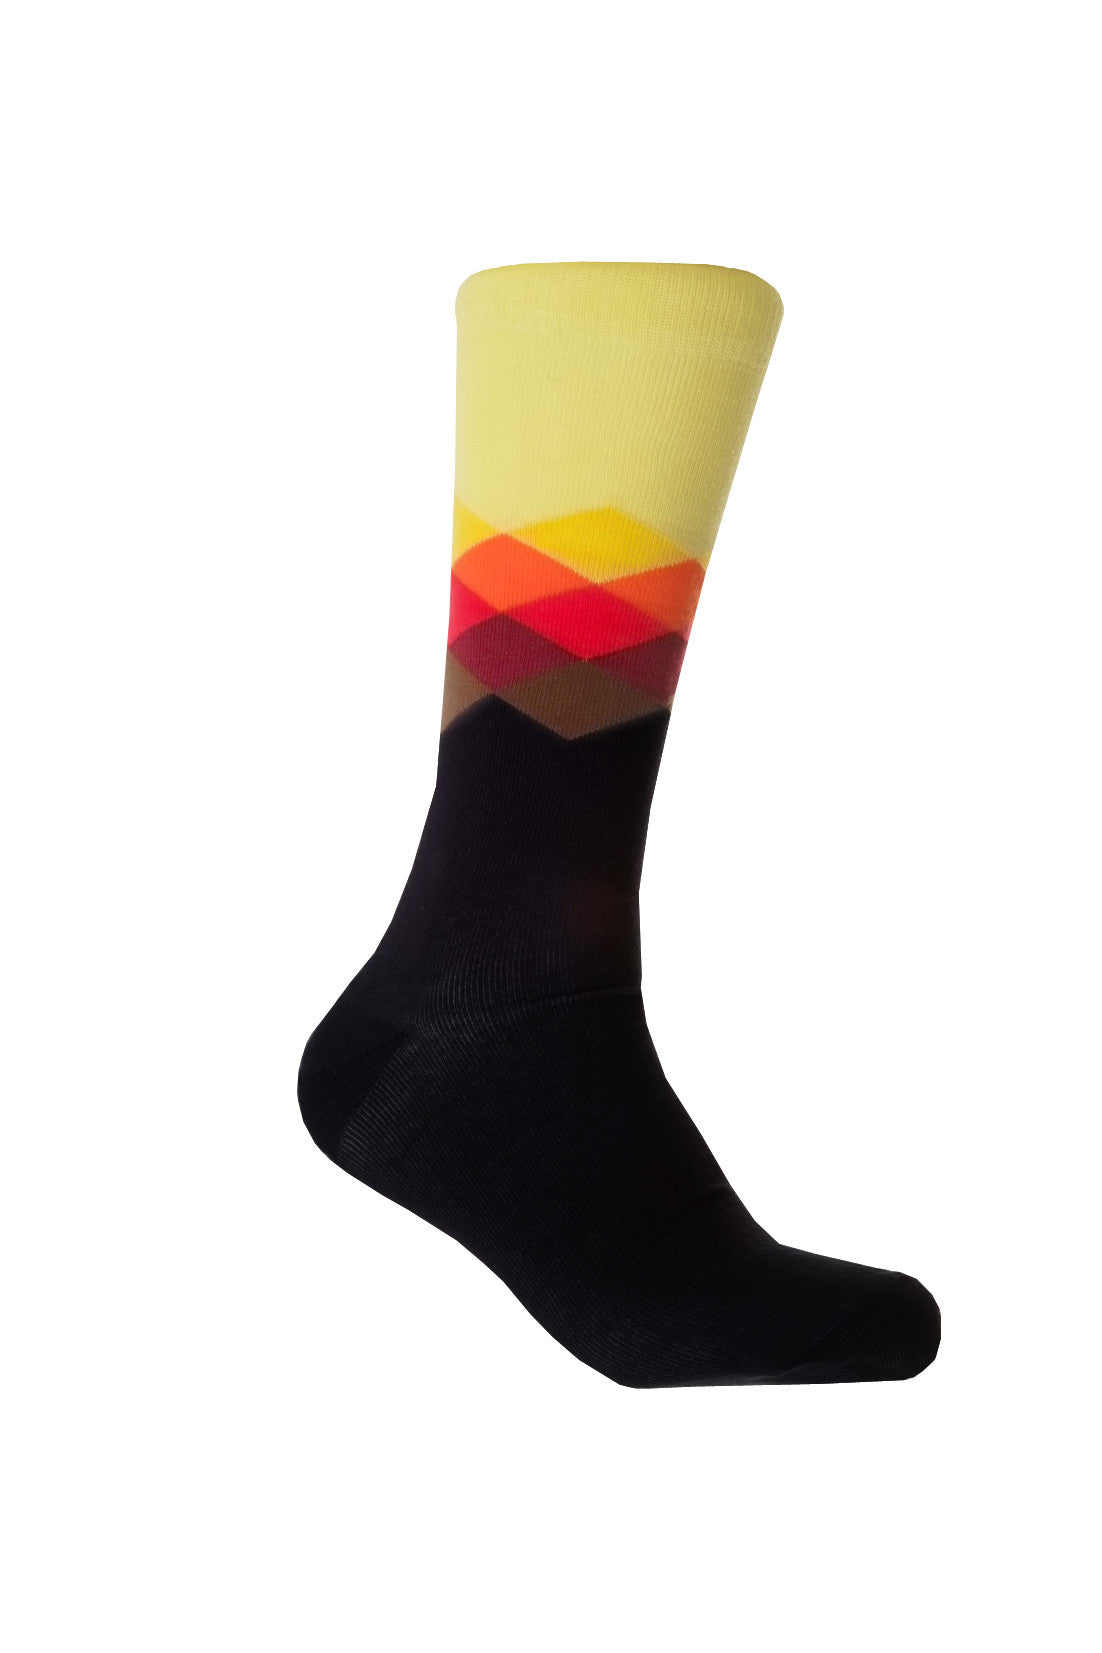 Giraffe Cool | Kaleidoscope Black Yellow Orange Brushed Cotton Socks Foot Front